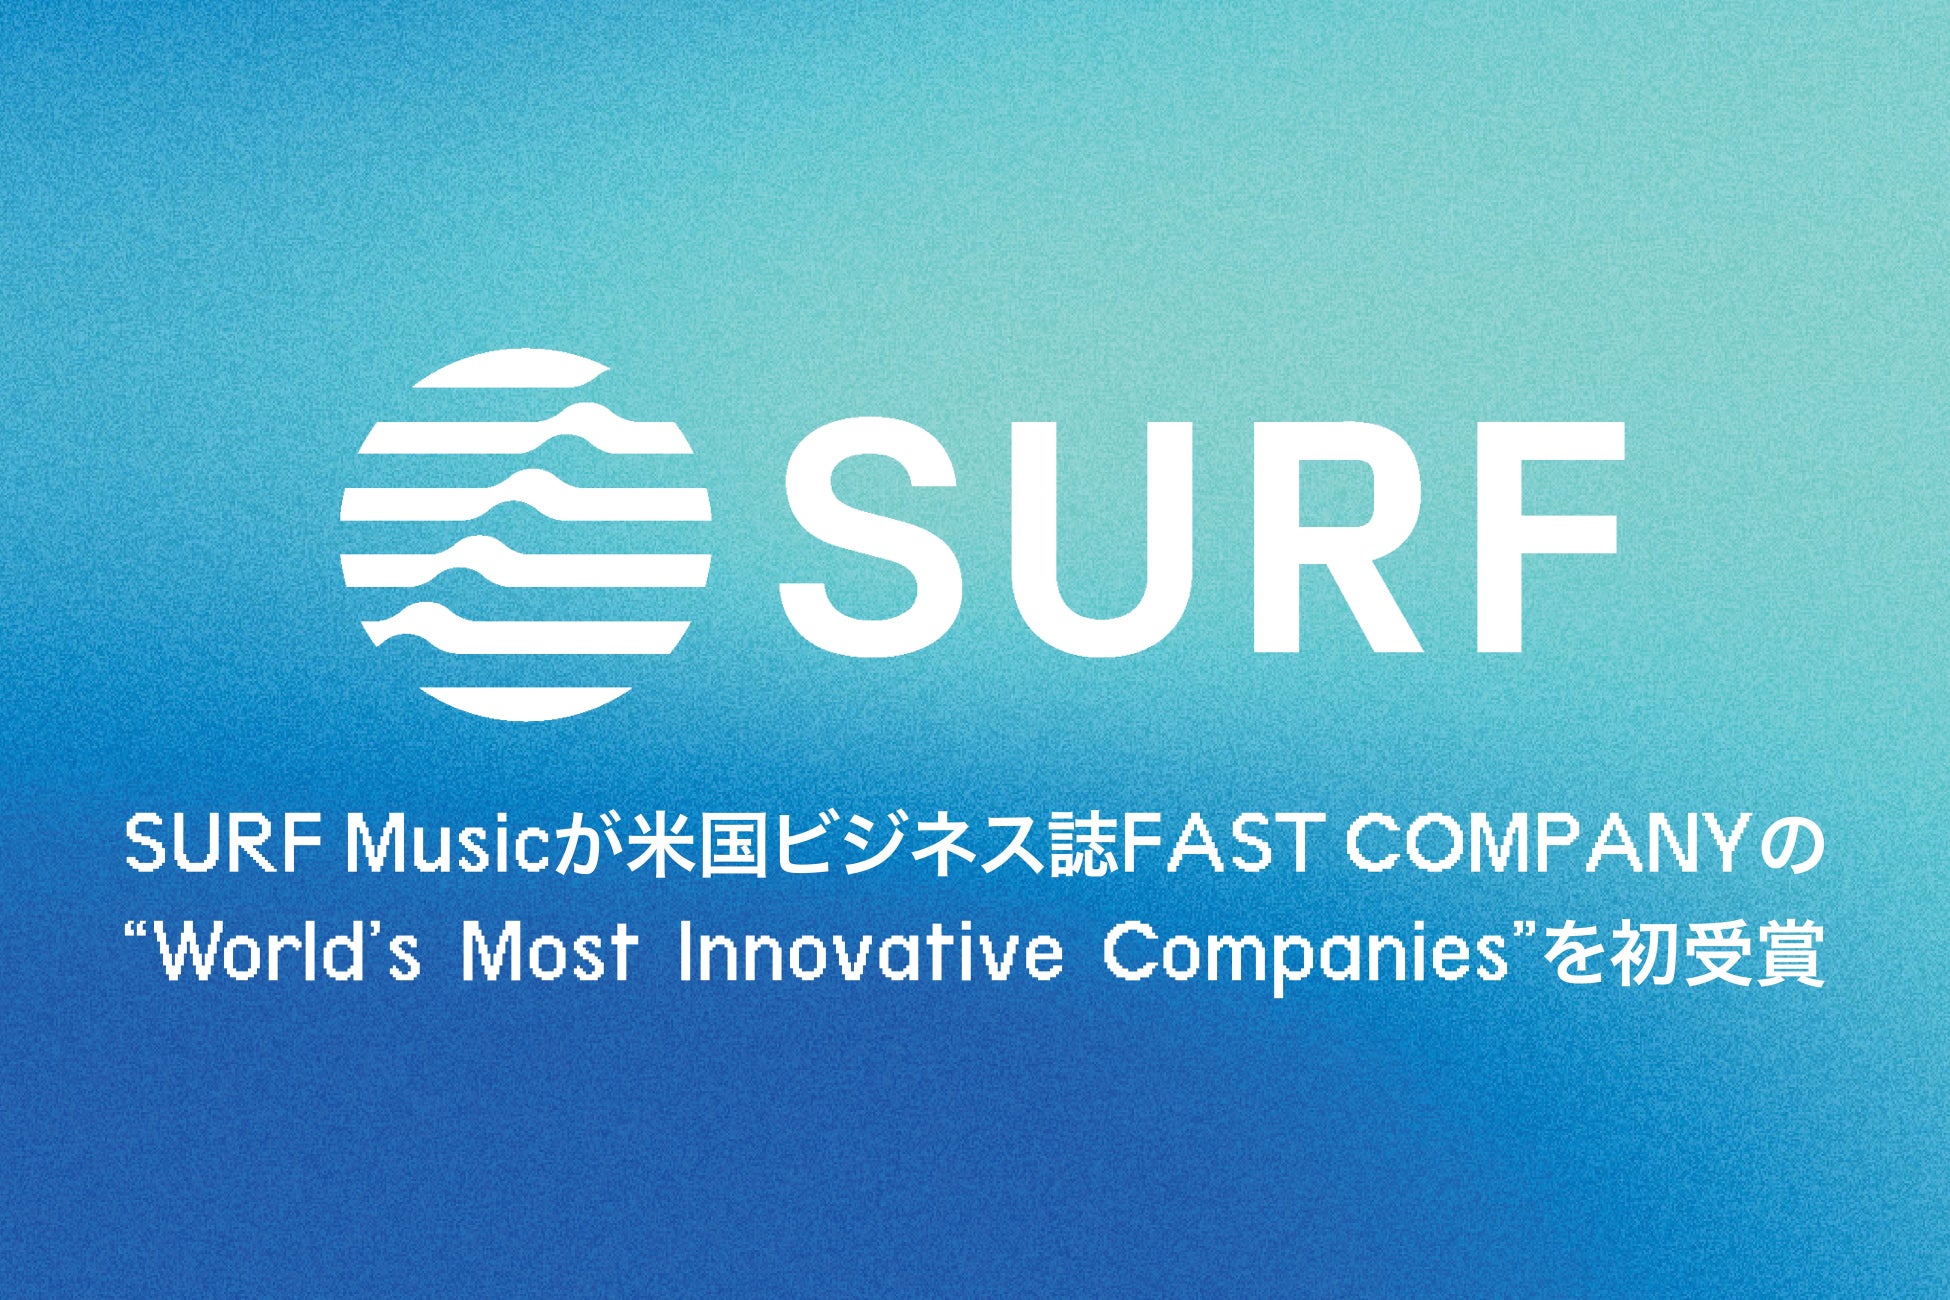 SURF Musicが米国ビジネス誌『FAST COMPANY』が選出する「World’s Most Innovative Companies（世界で最も革新的な企業）」を初受賞